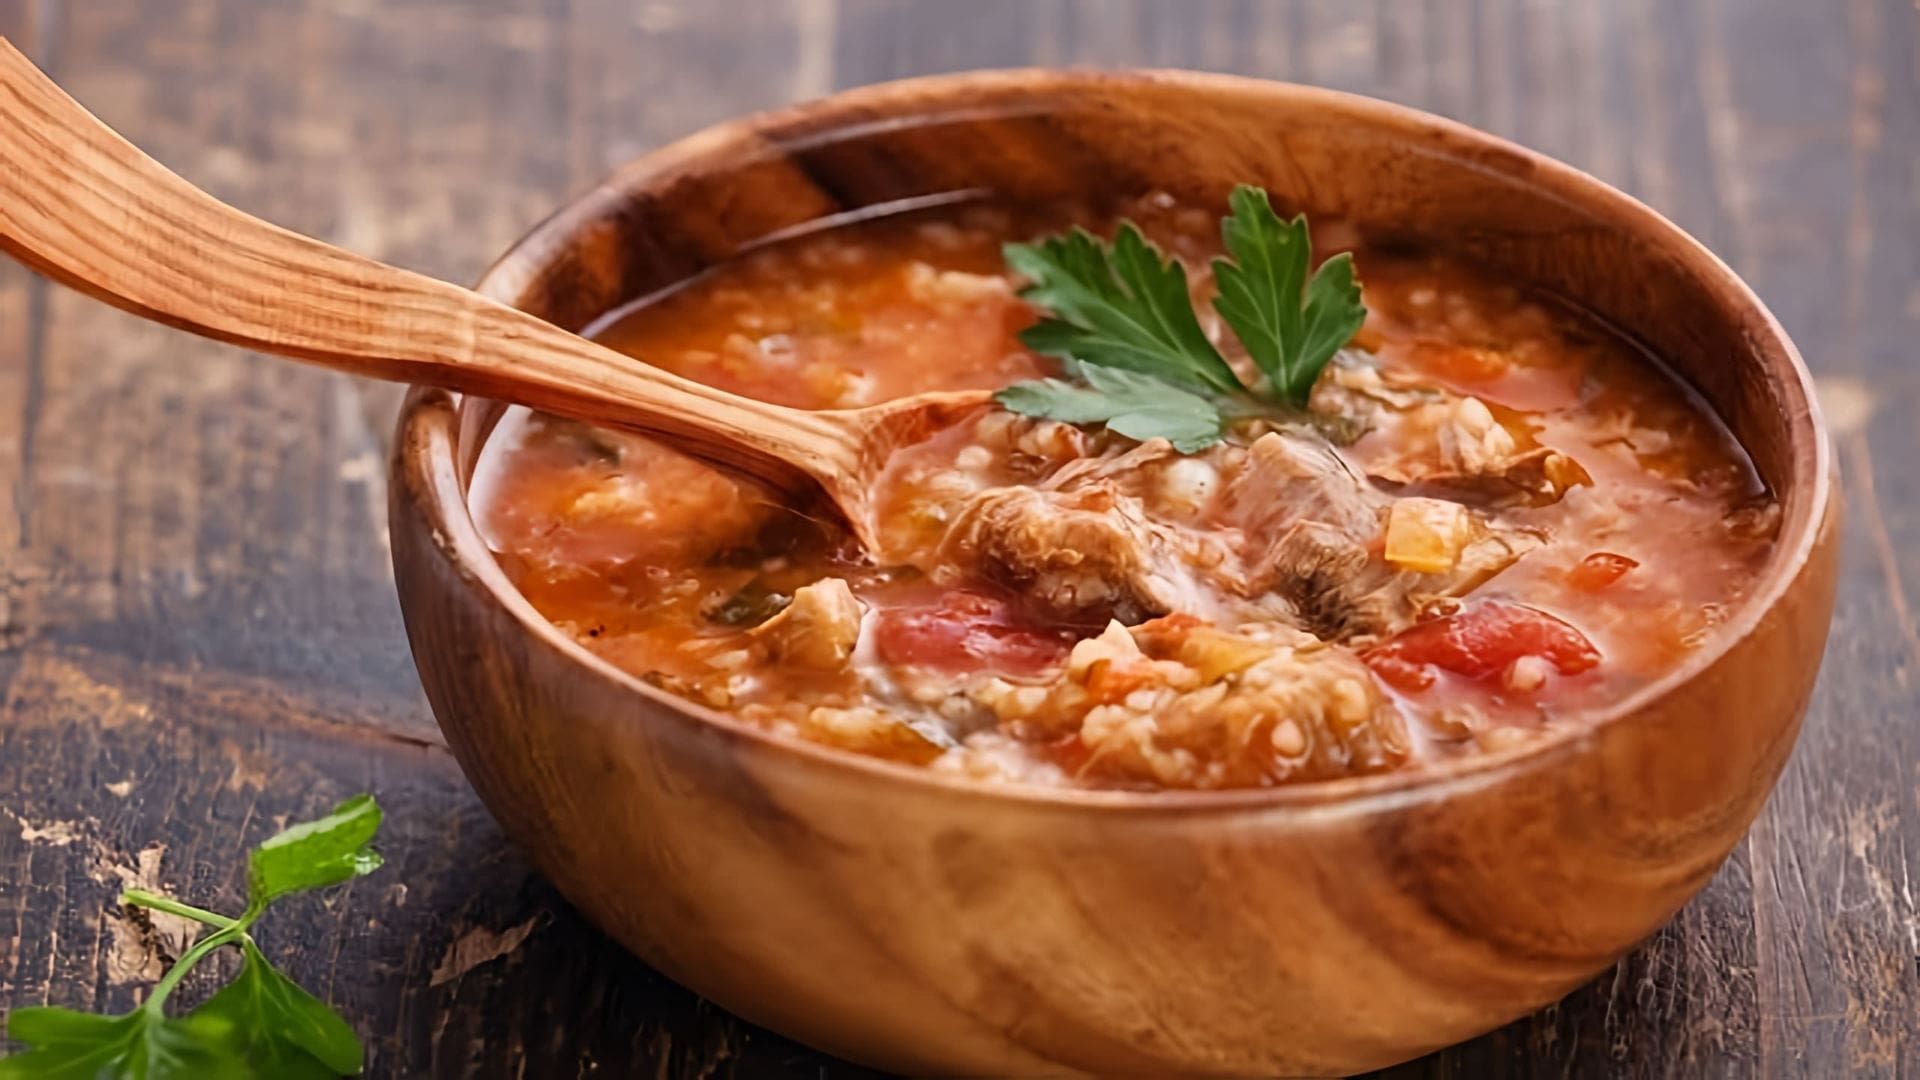 Суп ХАРЧО - это вкусное блюдо грузинской кухни, которое готовится по классическому рецепту